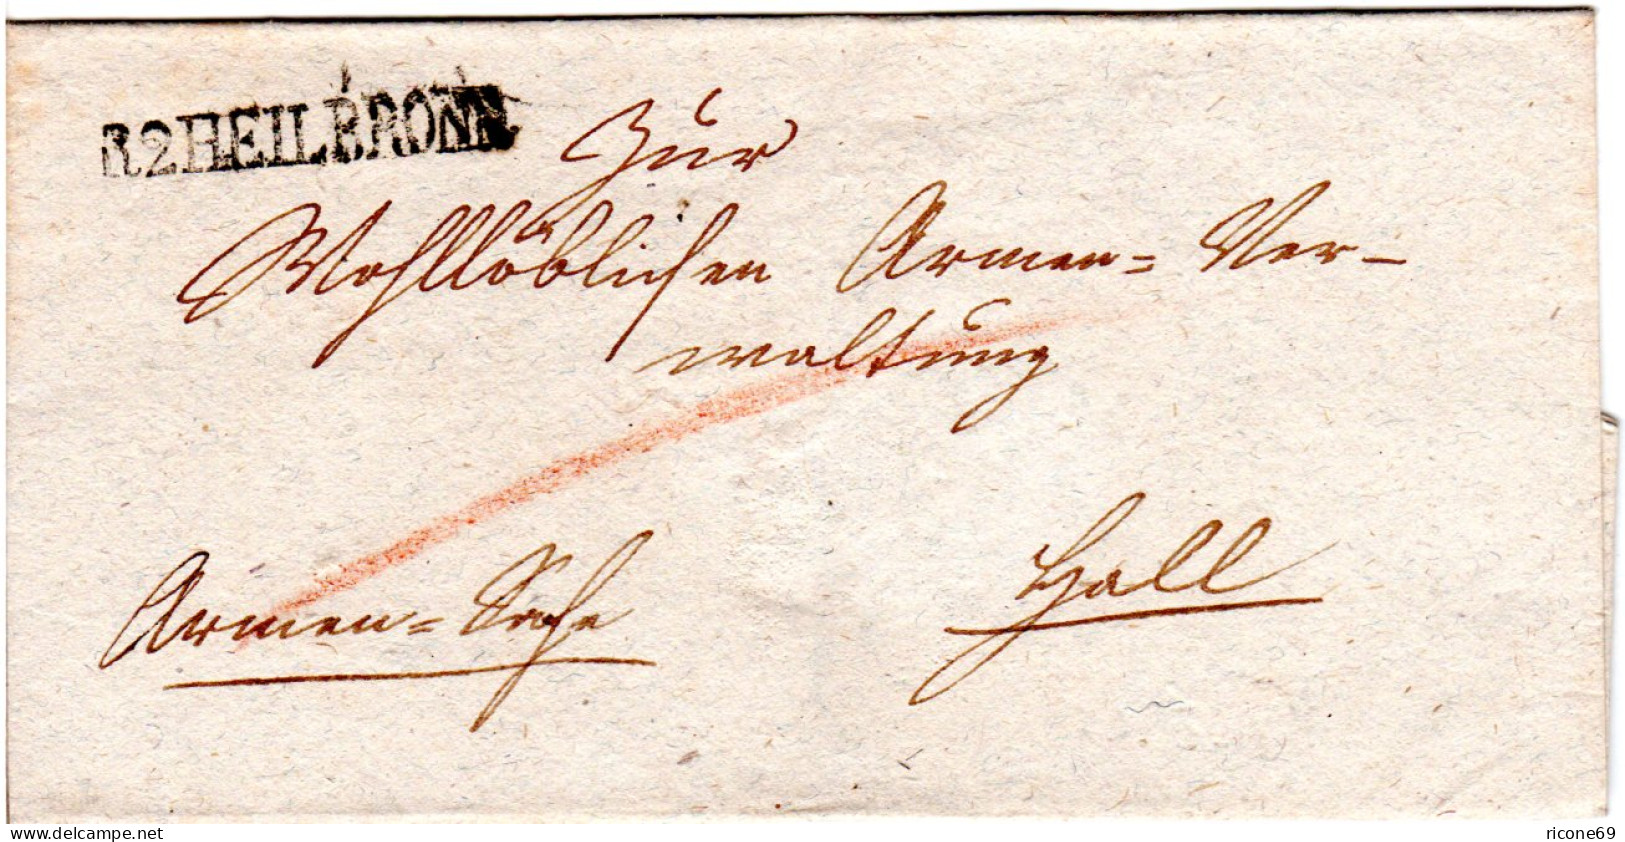 Württemberg, L1 R2 HEILBRONN Auf Armensache Brief N. Hall. - [Voorlopers